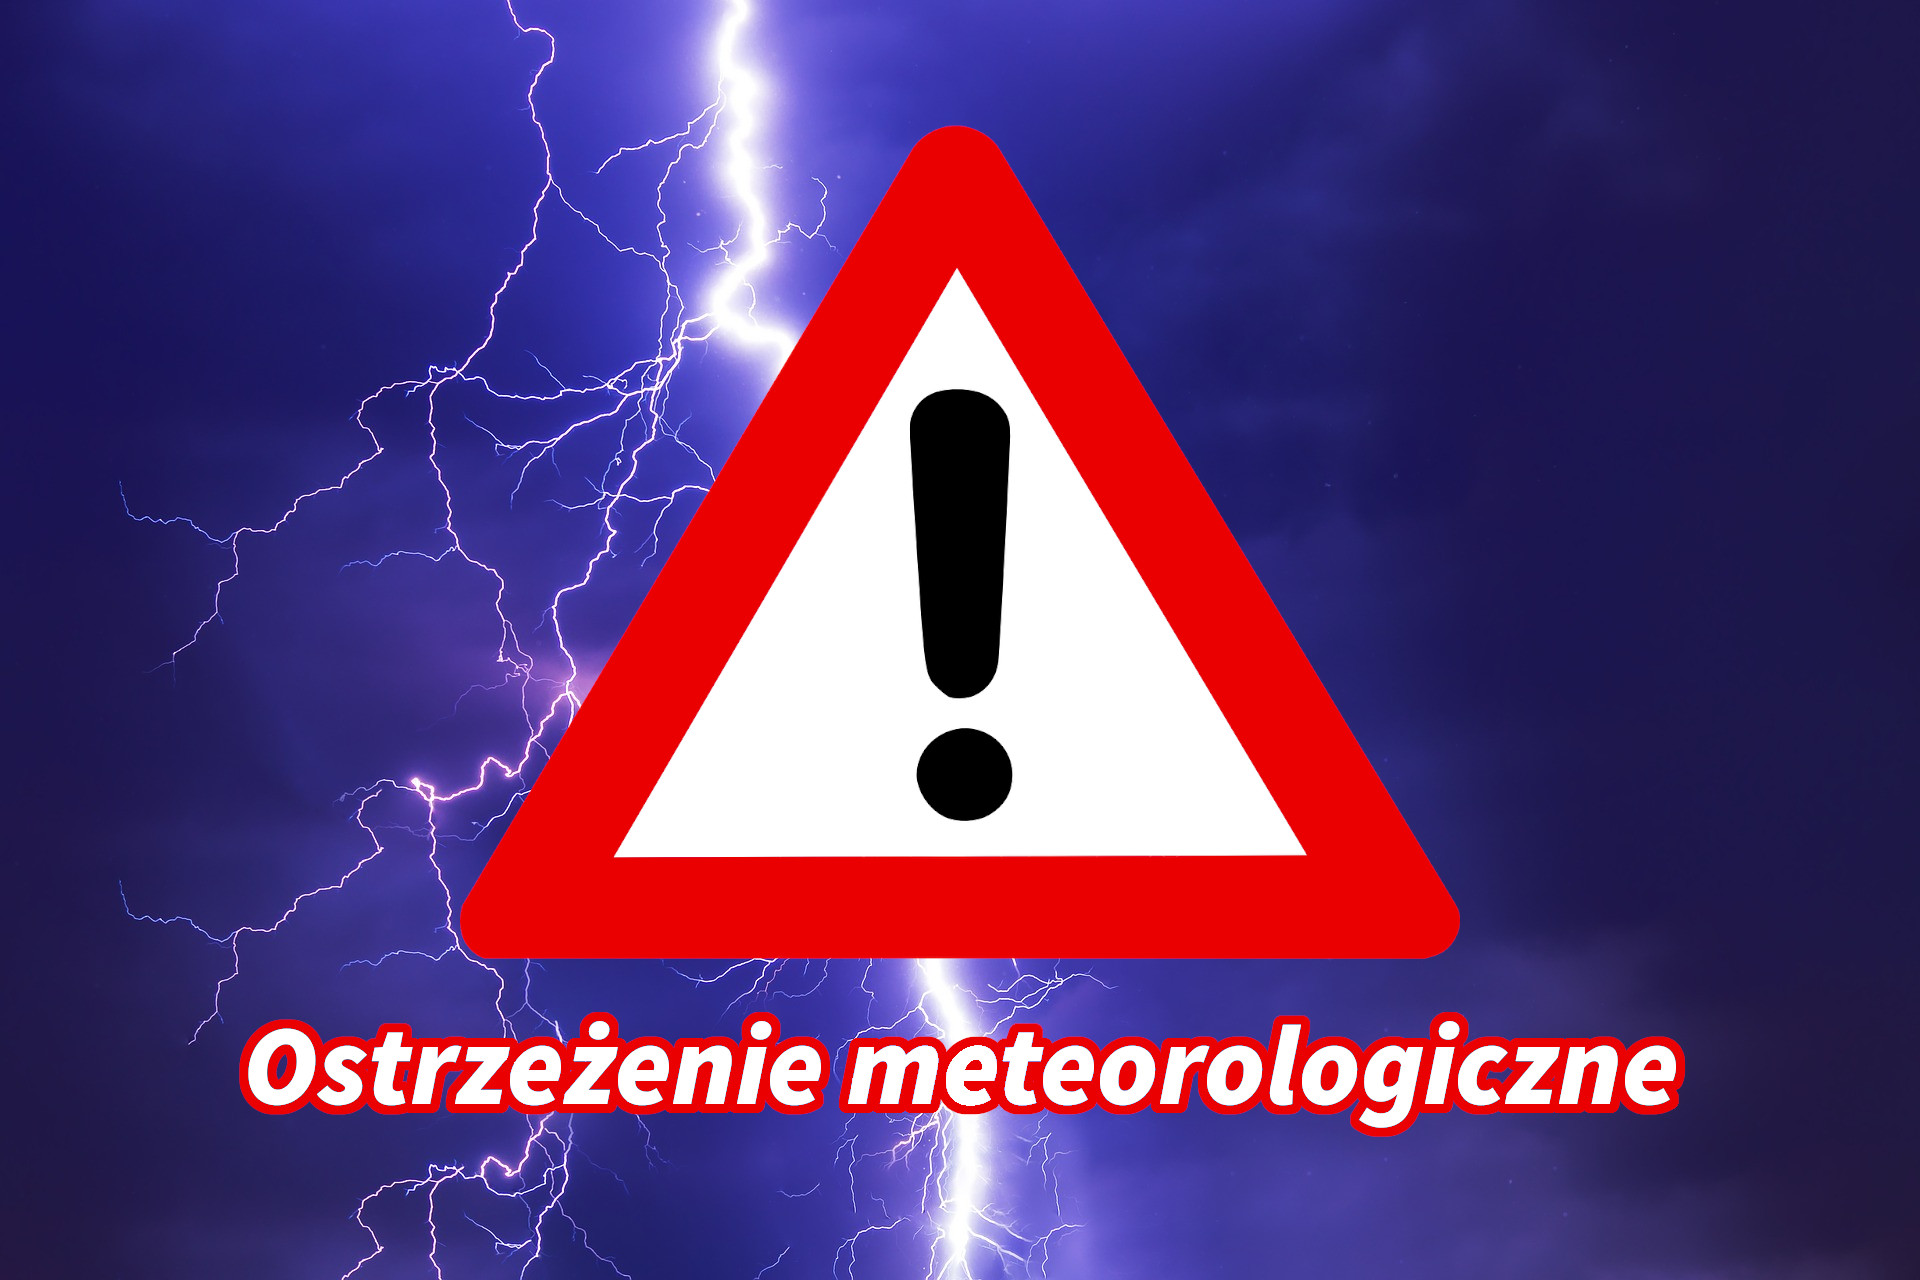 Ostrzeżenia meteorologiczne zbiorczo nr 225 – burze/upał